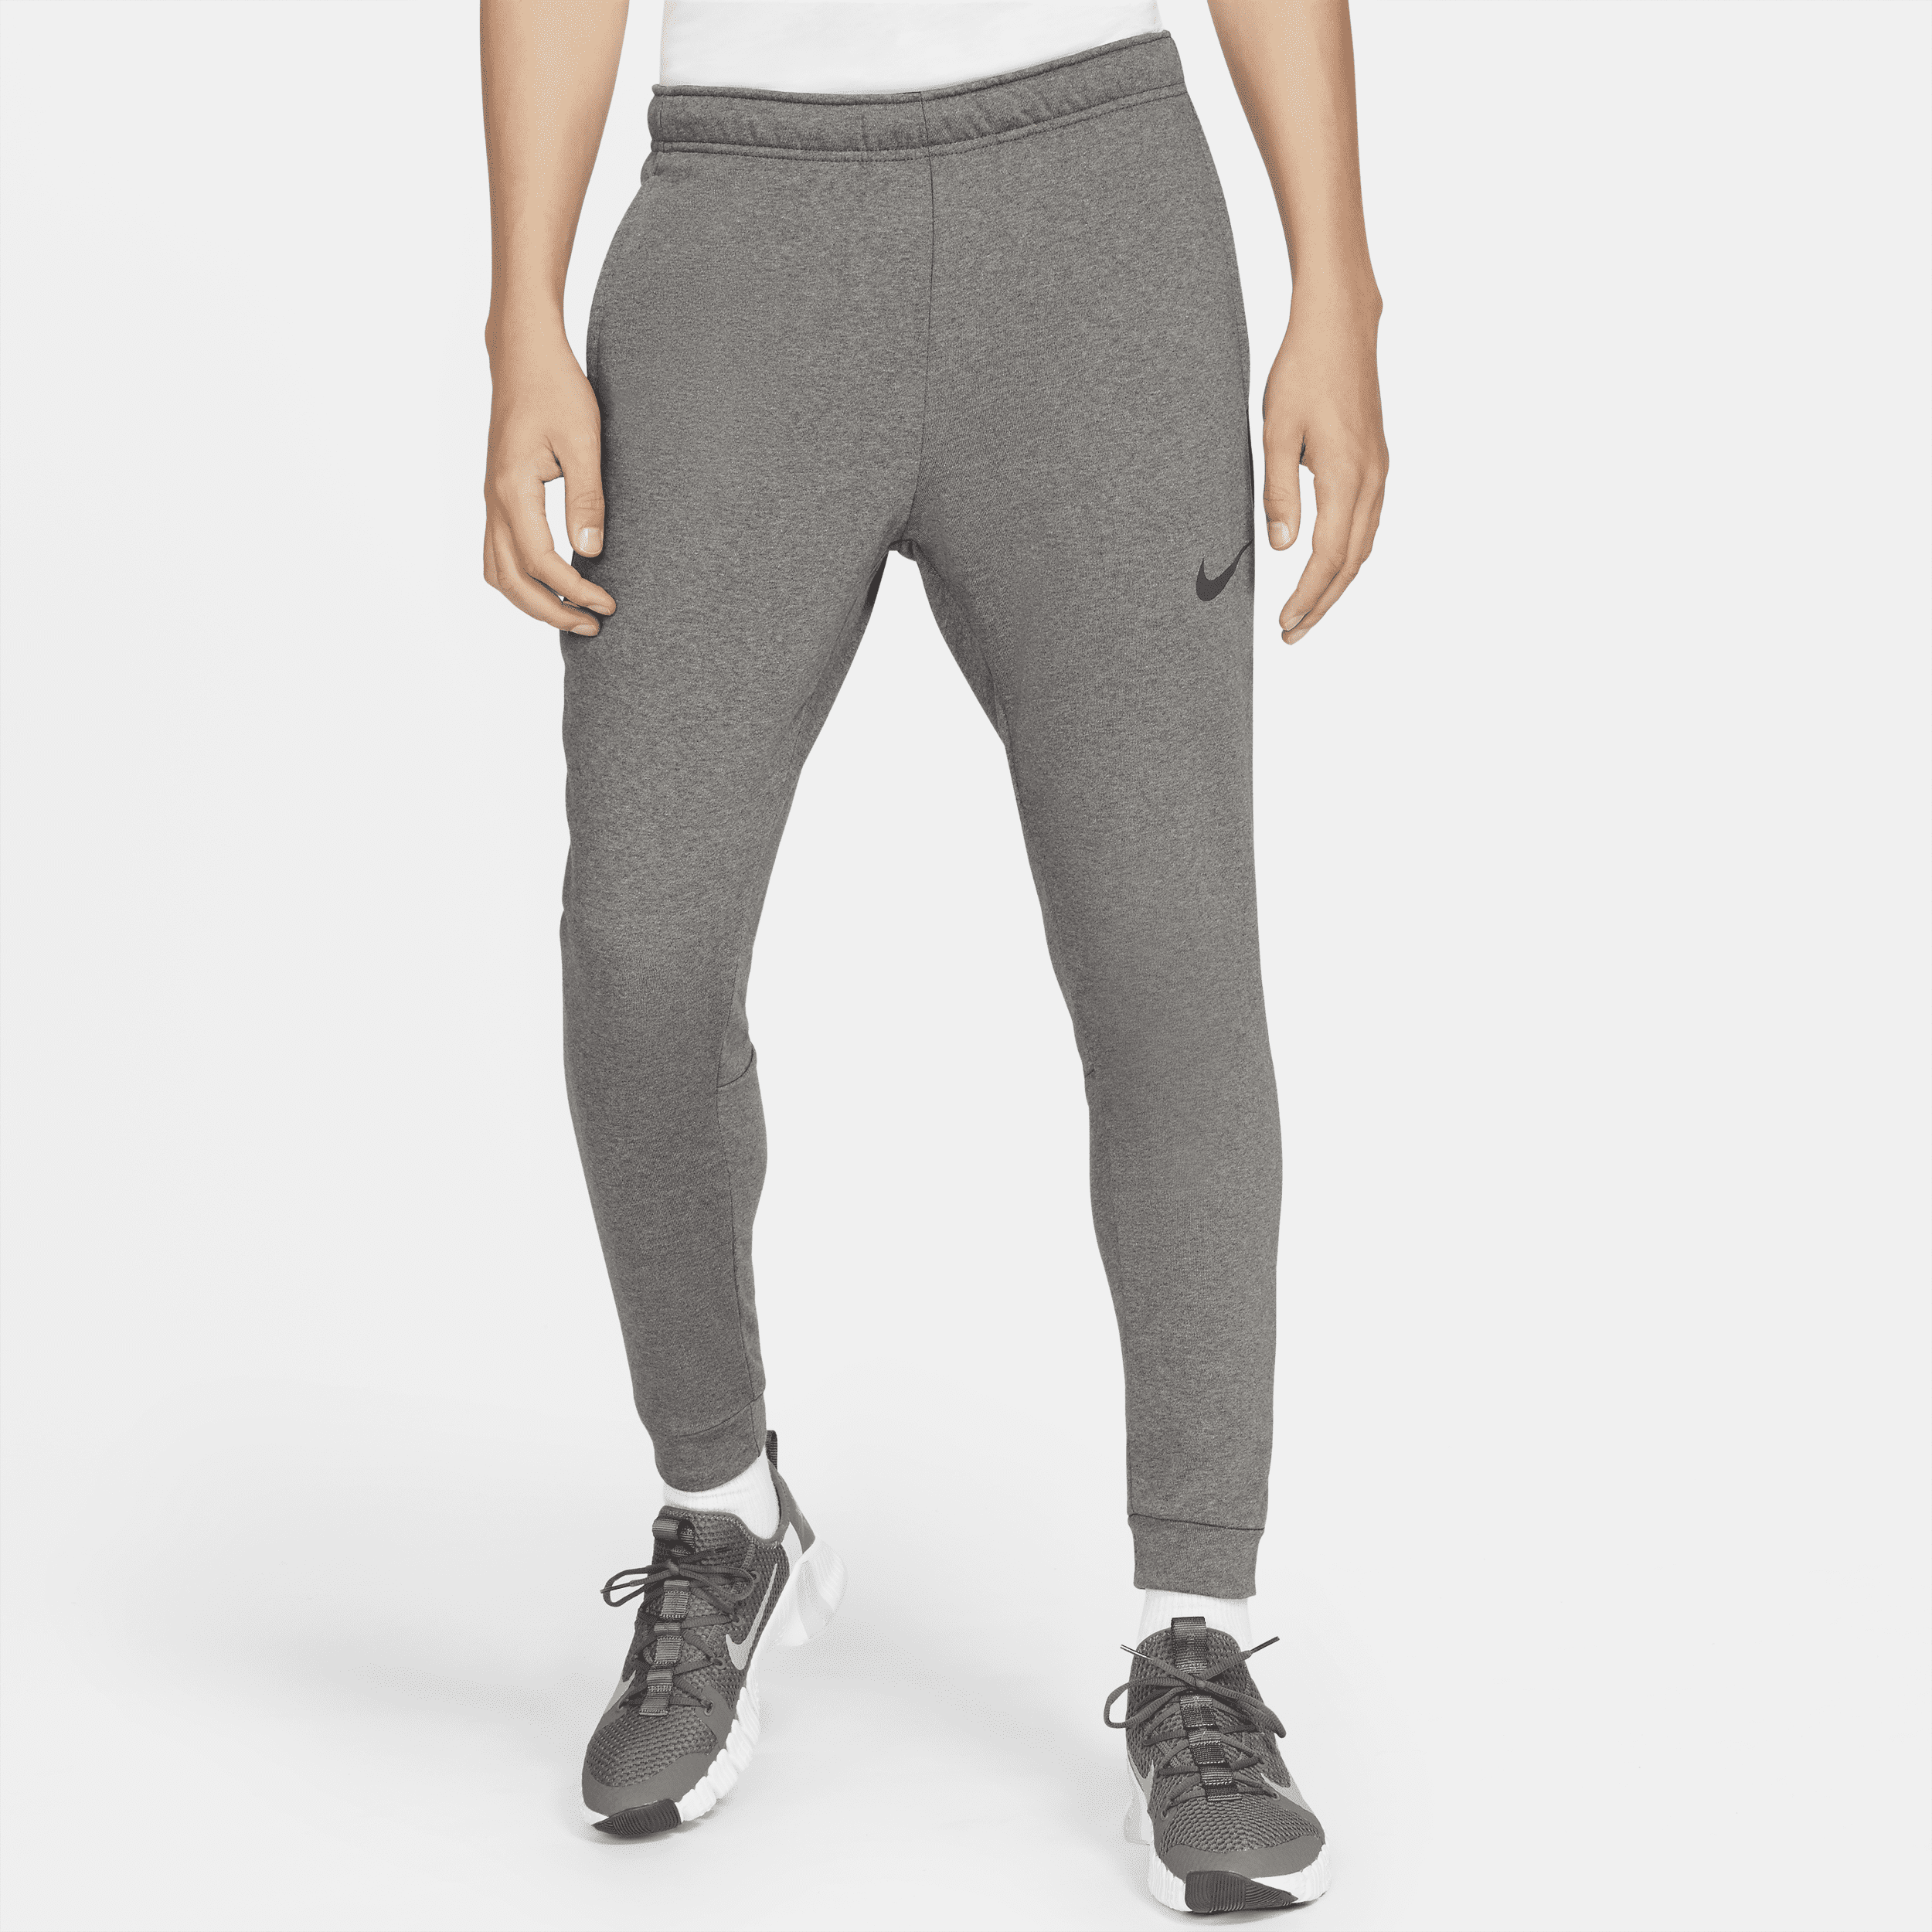 Nike Dry Dri-FIT toelopende fitnessbroek van fleece voor heren - Grijs